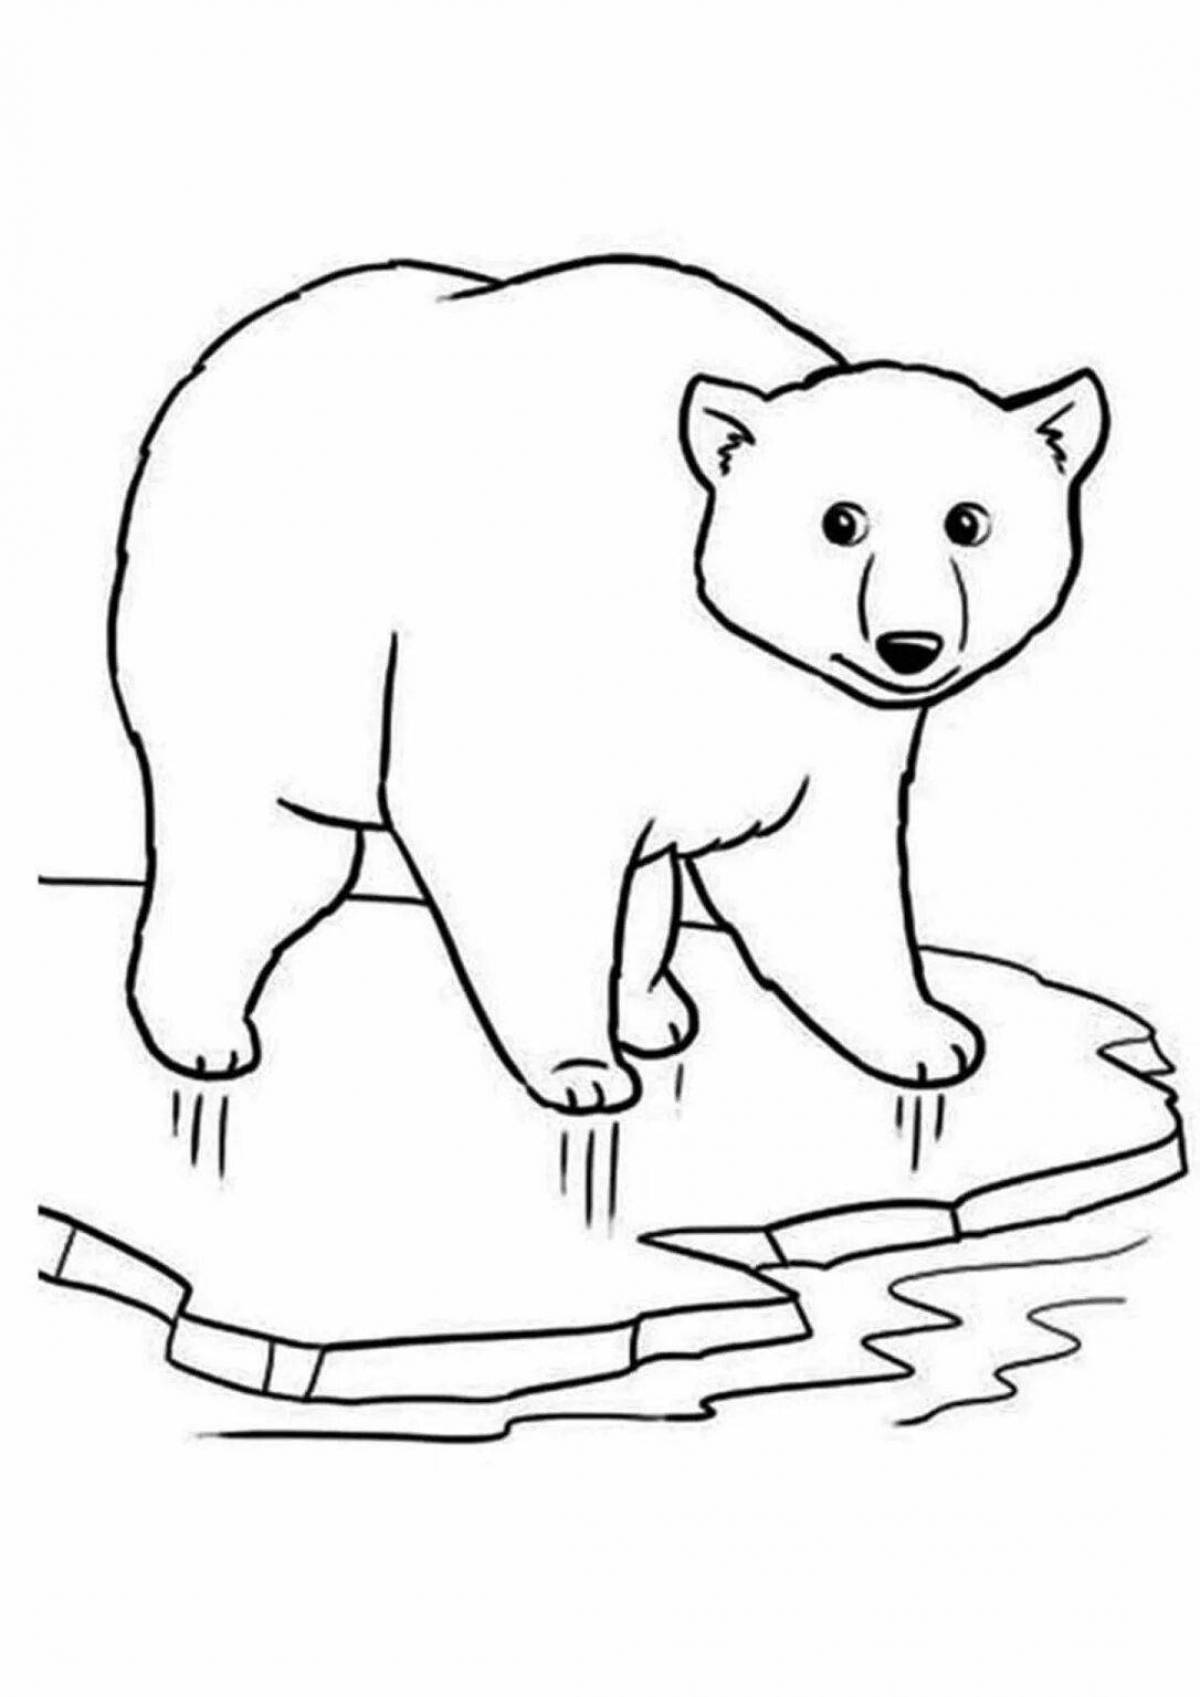 Coloring book shining polar bear